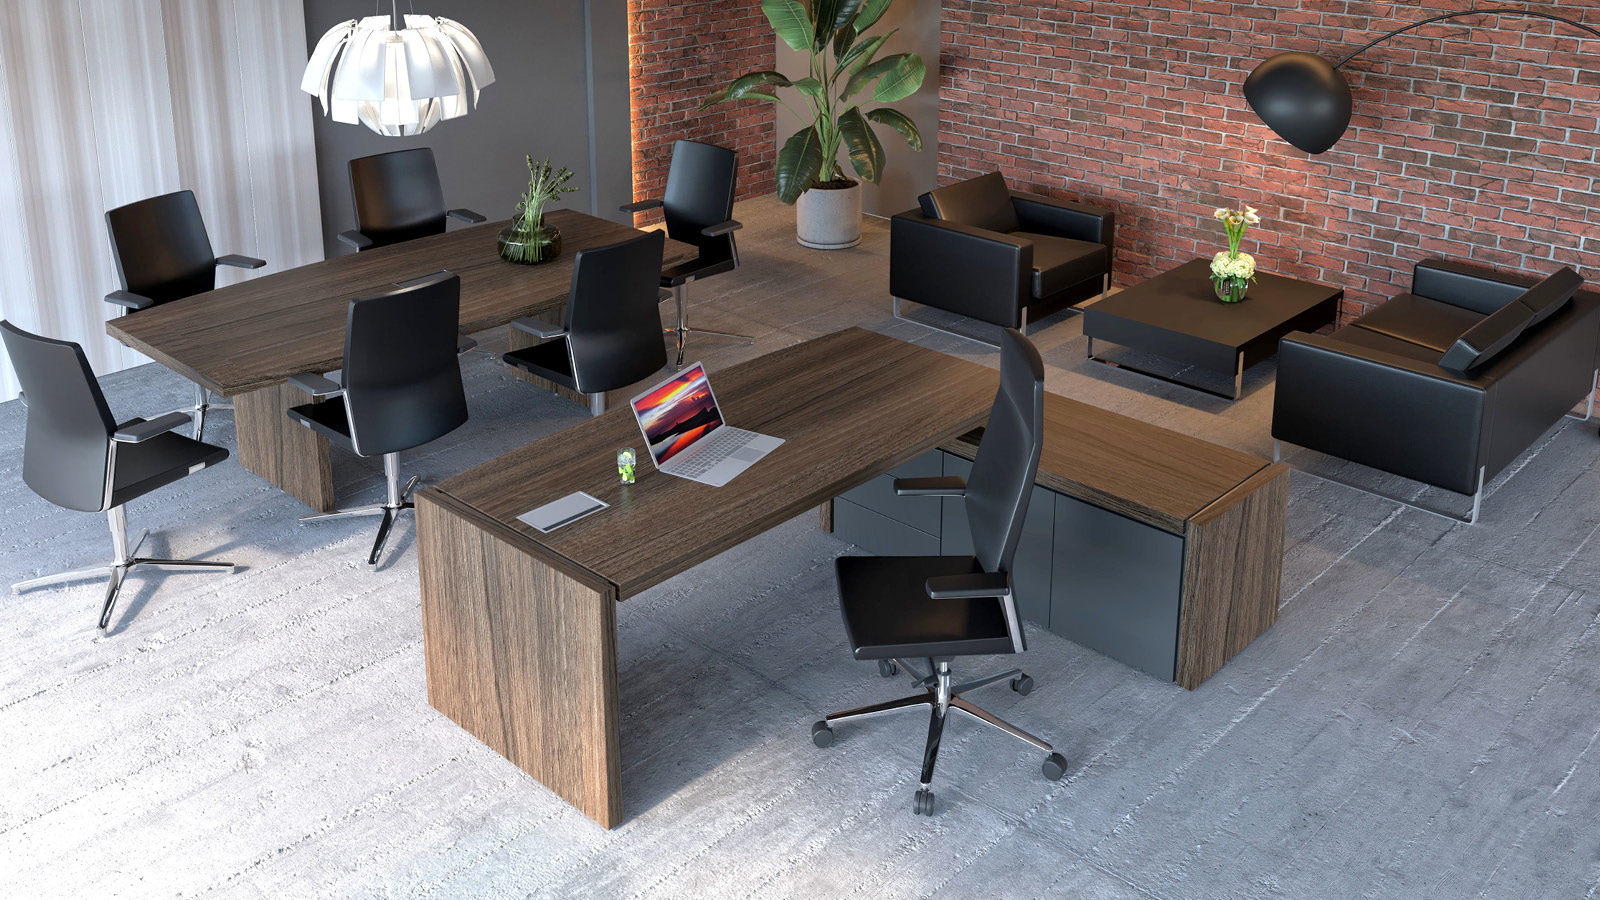 Otwarta przestrzeń gabinetowa z wydzieloną strefą do pracy, rozmów i odpoczynku. Wyposażona w biurko, stół, sofy i fotele.